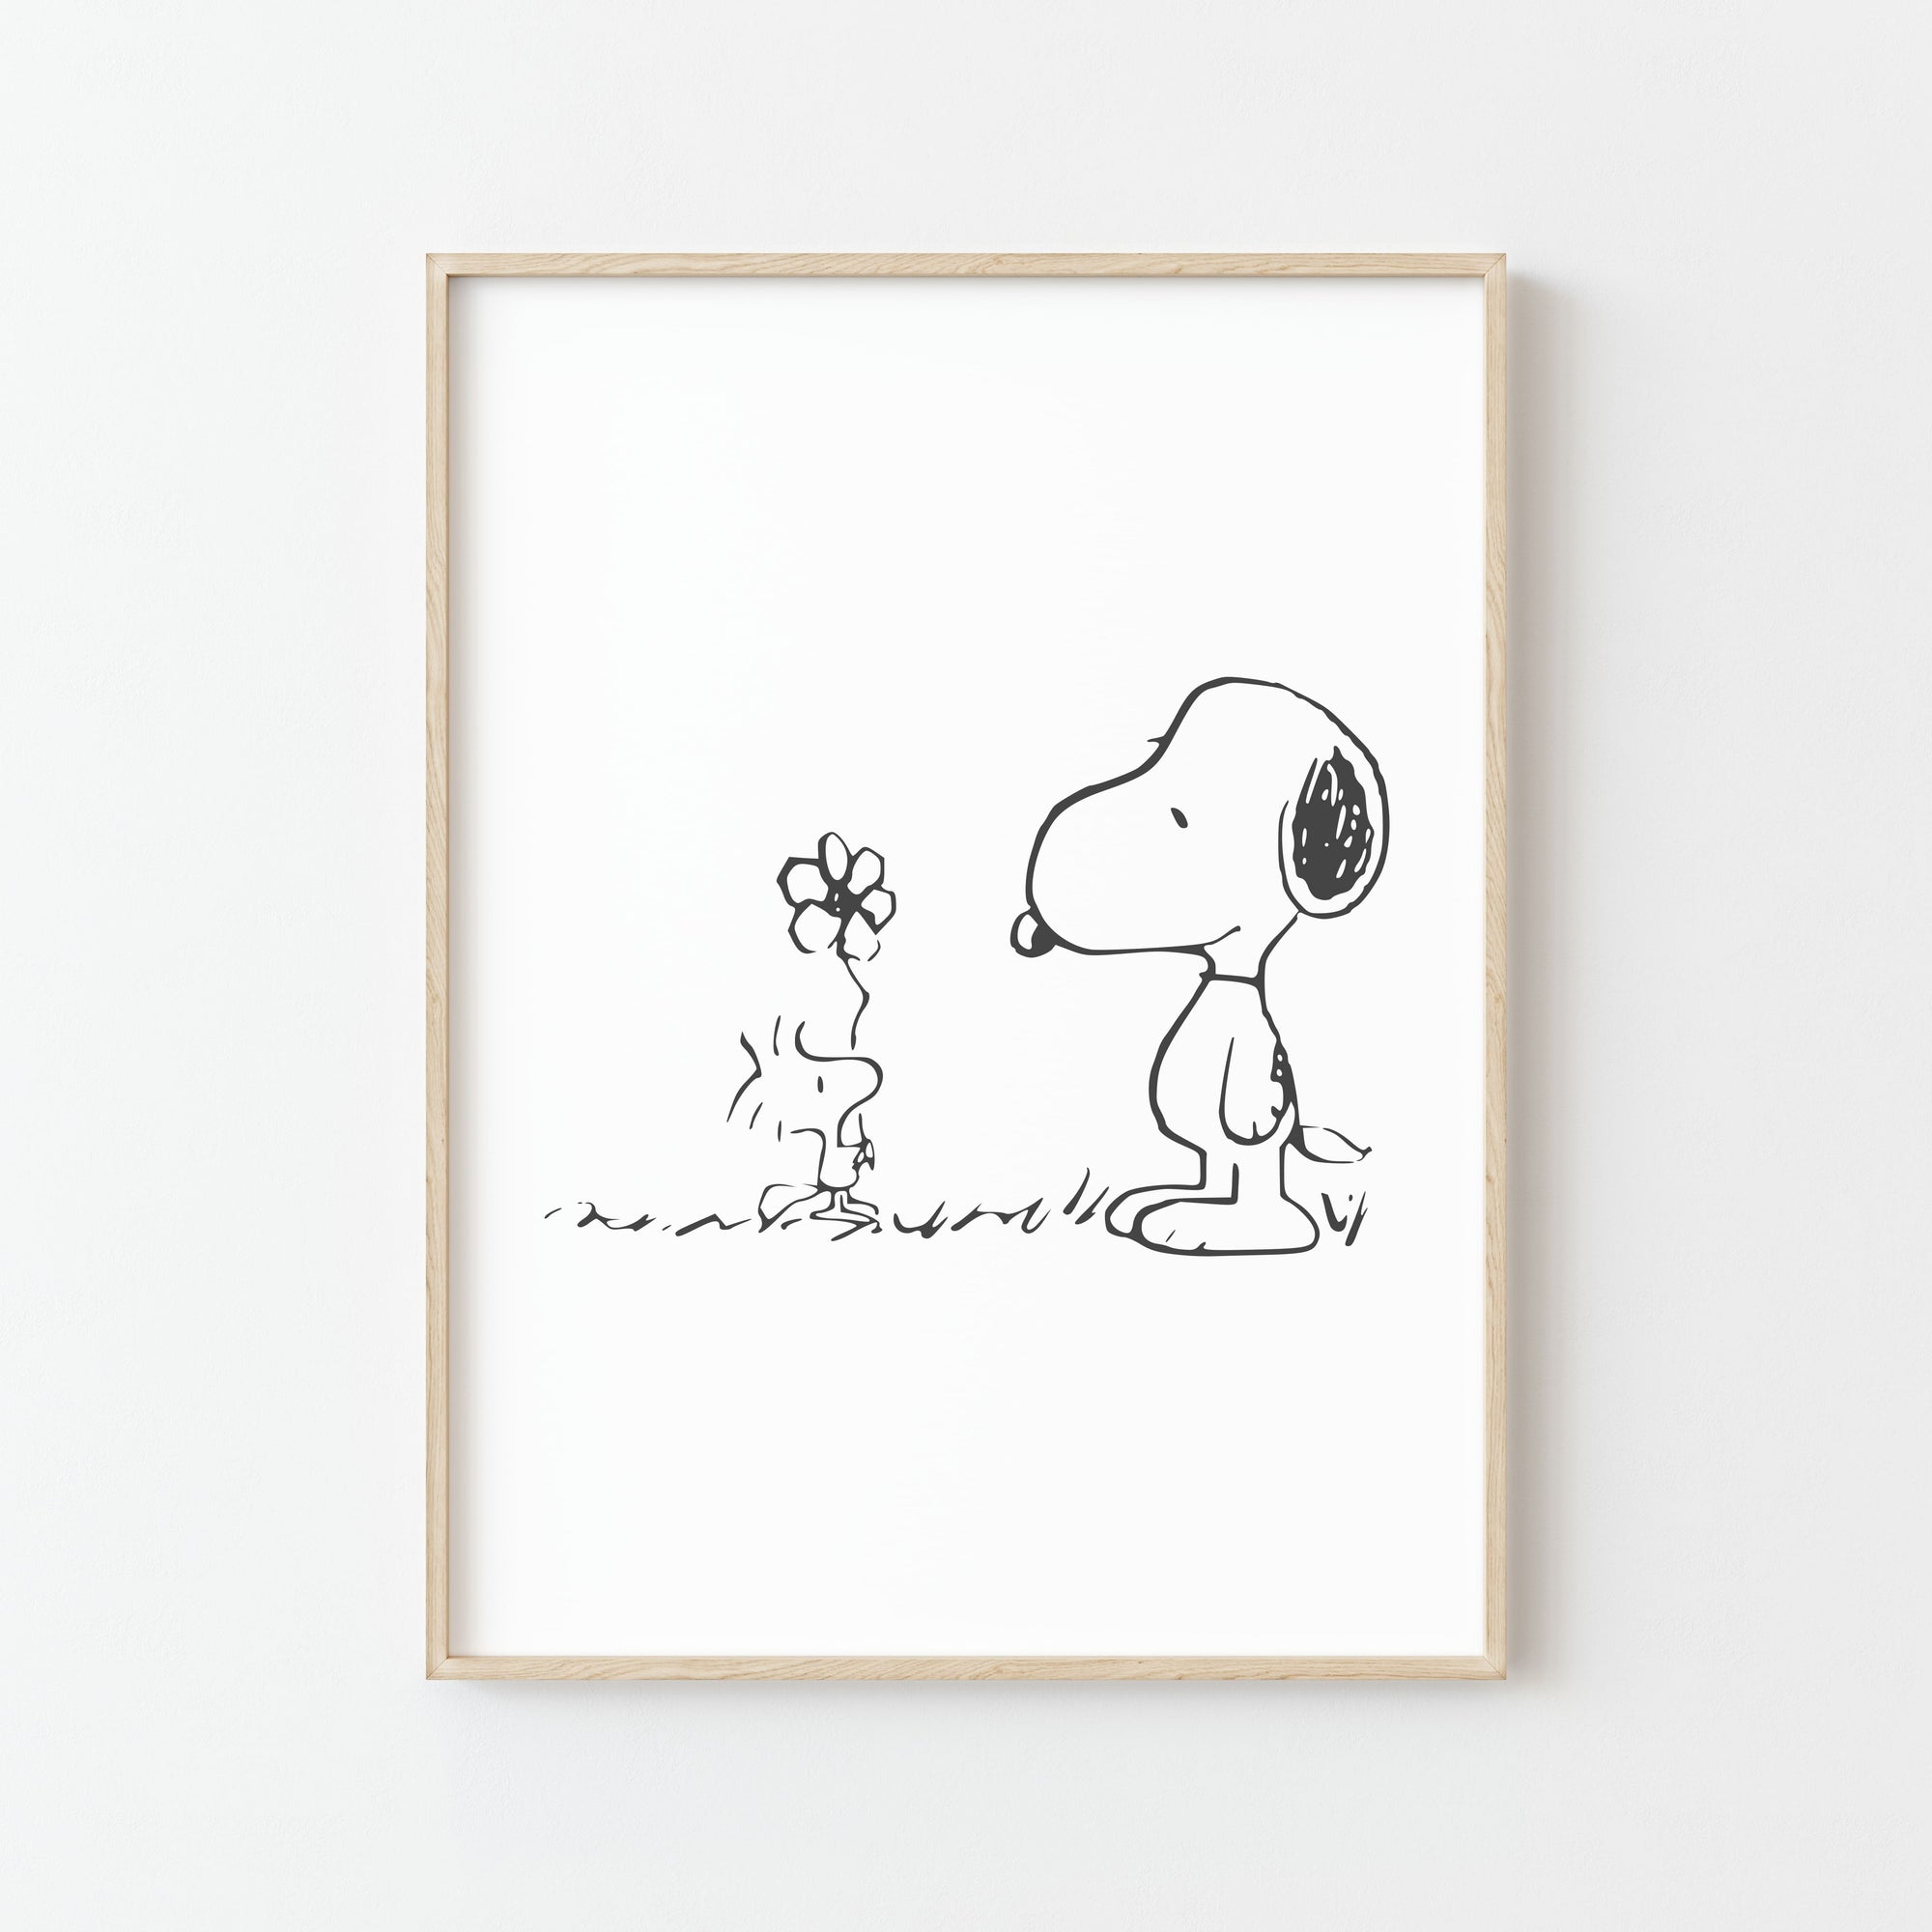 Affiche Snoopy Woodstock: Votre Dessin Animé en Décoration Murale!